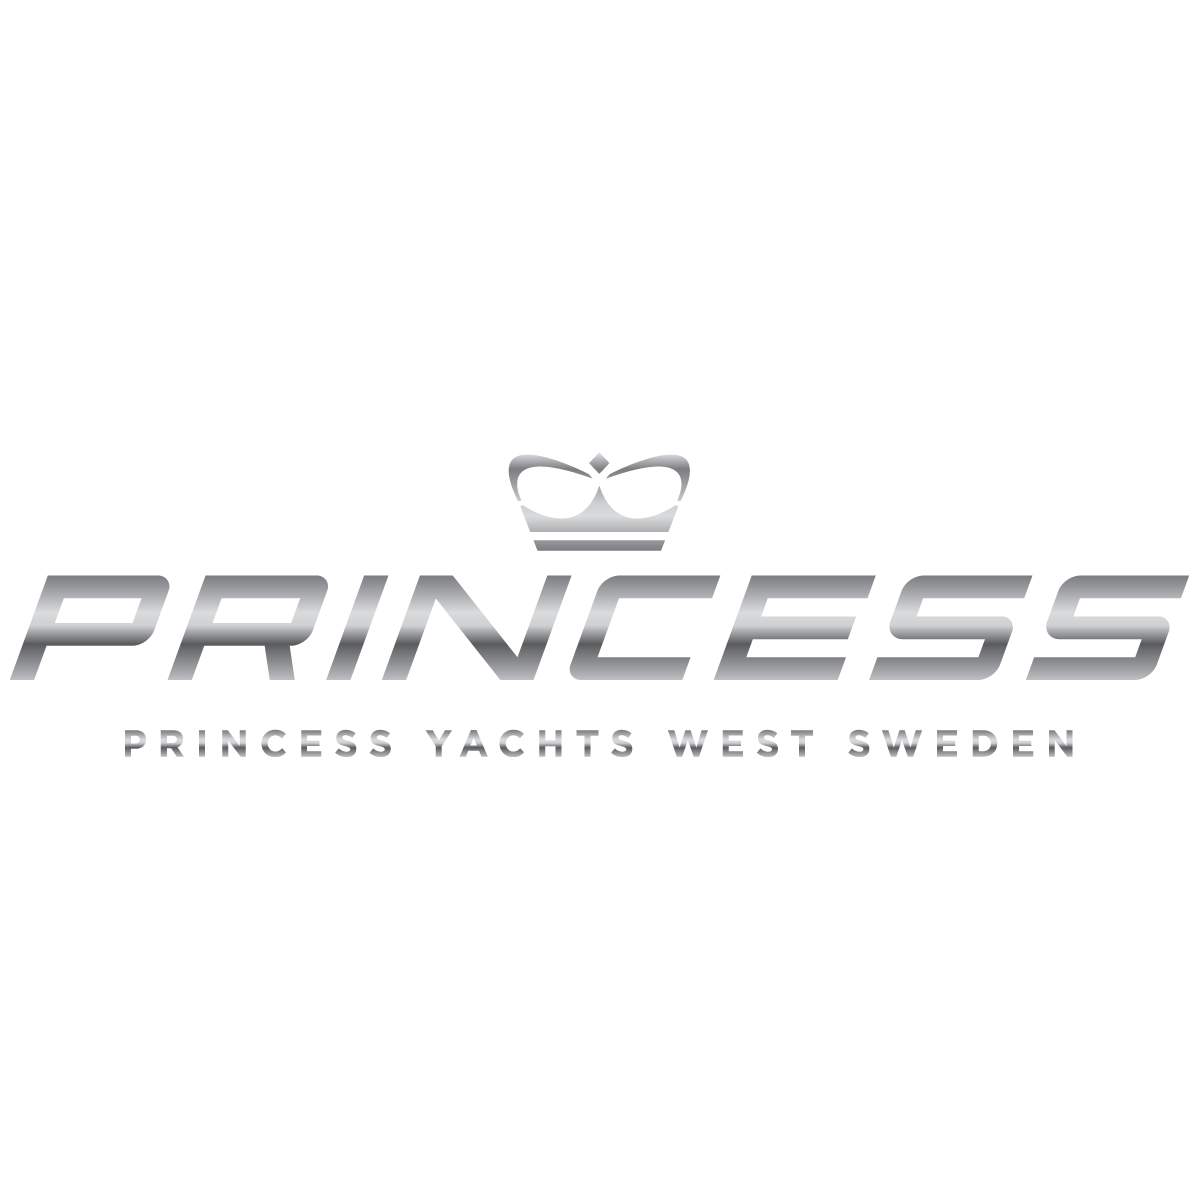 Ny distributör för Princess Yachts i västra Sverige